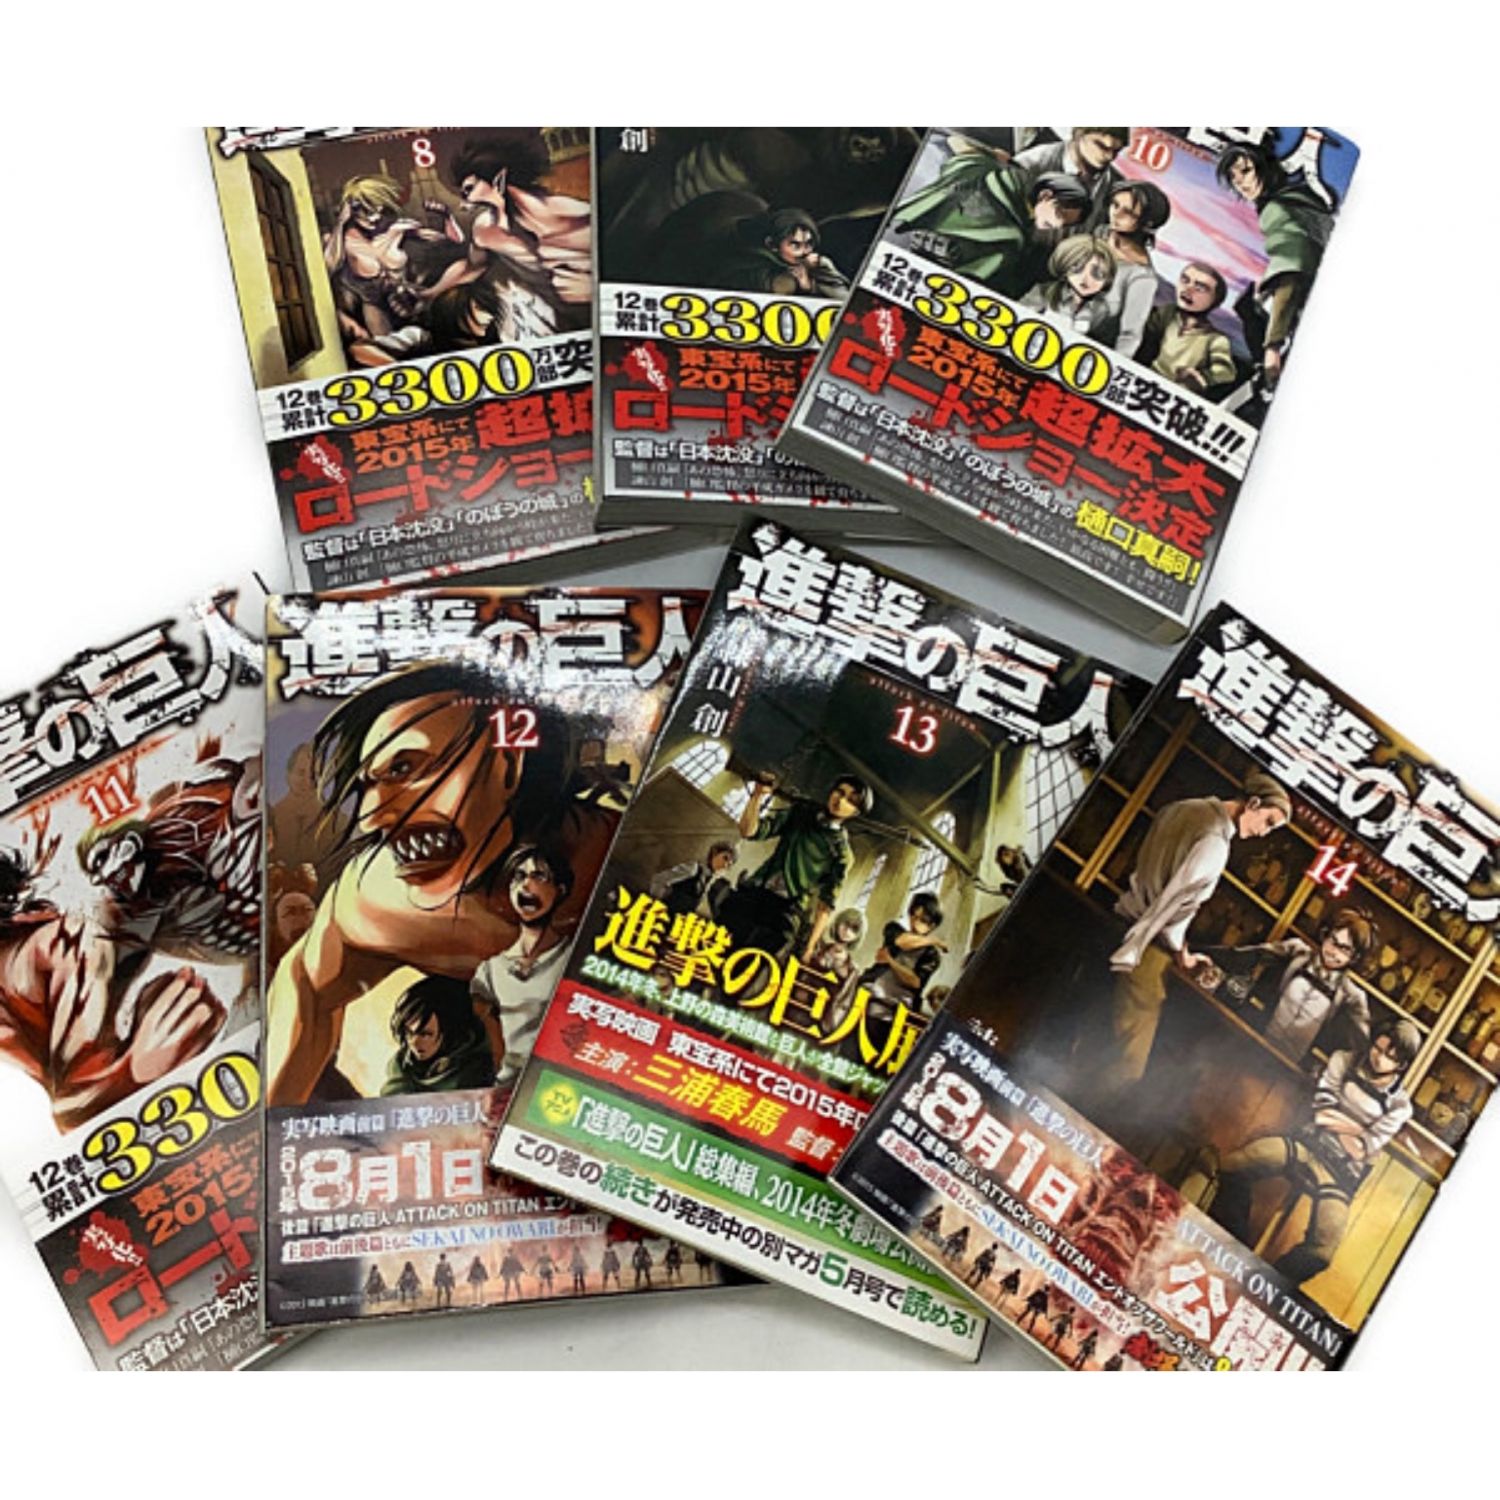 【新品・未開封】進撃の巨人 24巻・25巻・26巻限定版オリジナル DVDセット